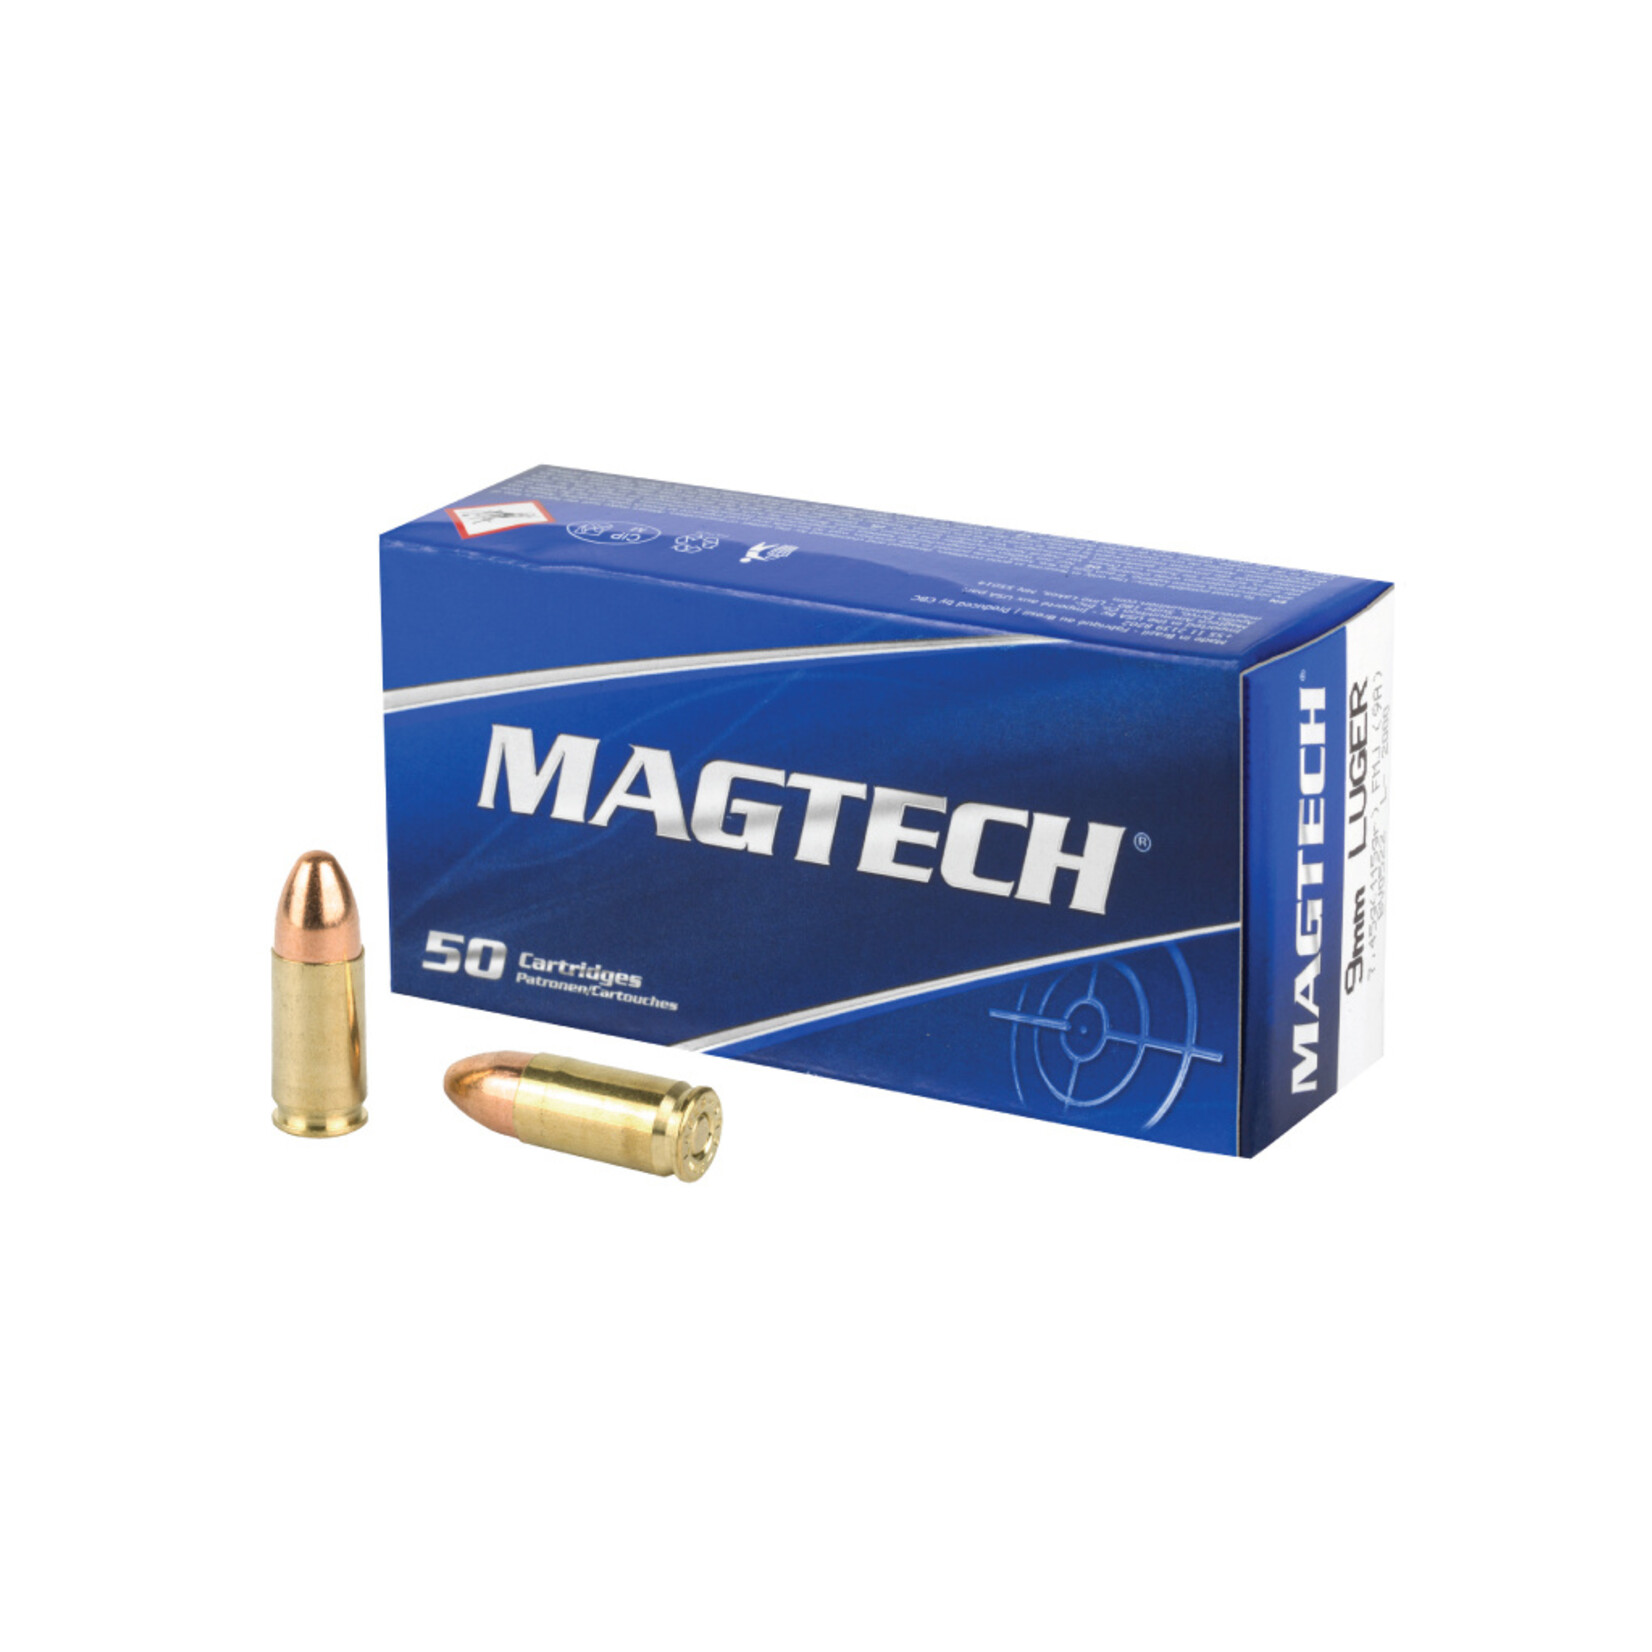 Magtech 9mm 115gr FMJ 50rd Box